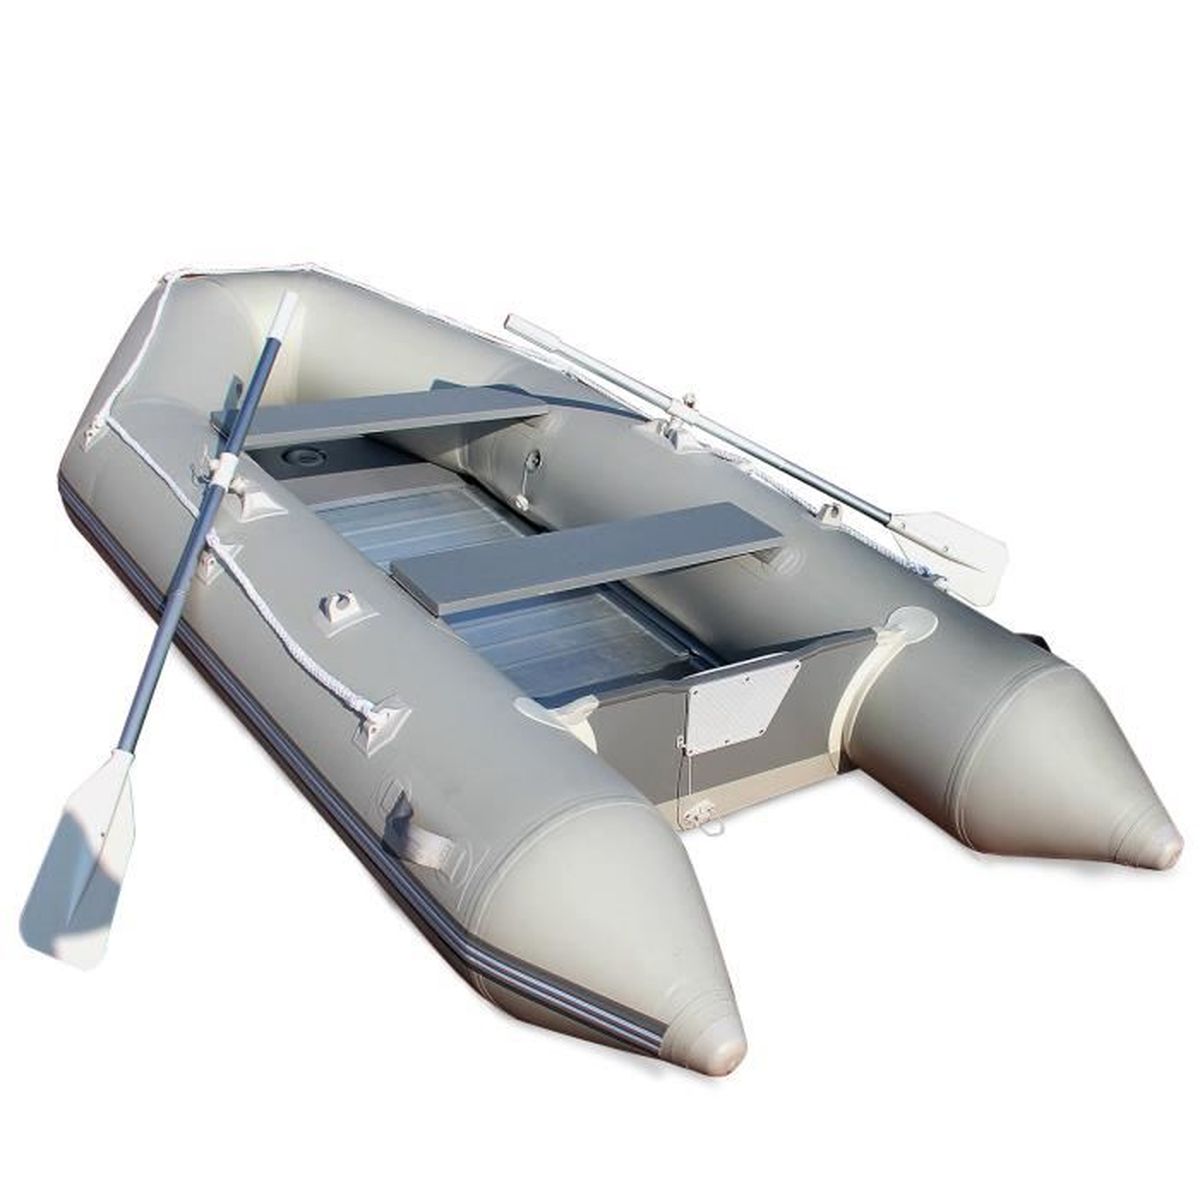 Куплю лодку пвх в интернет магазине. Лодка надувная Хайпалон фарватер 4,3 метра алюминиевый пол. Лодка надувная ПВХ (алюминиевый пол) x-Boat x-320. Лодка ПВХ 3 20. Надувная лодка Rima III Inflatable Dinghy 100''.